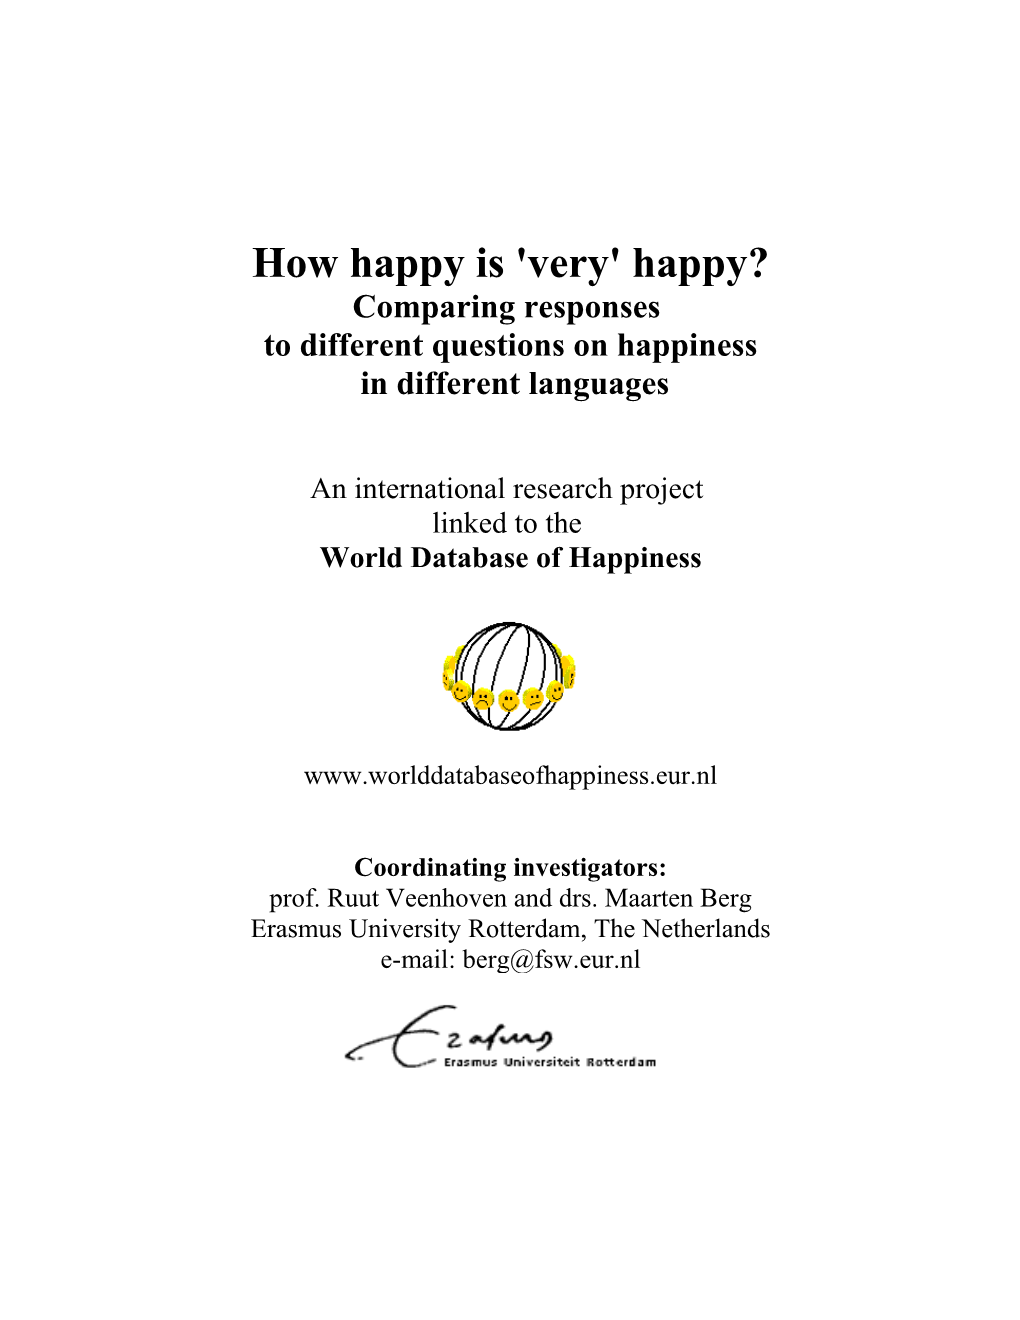 How Happy Is 'Very' Happy